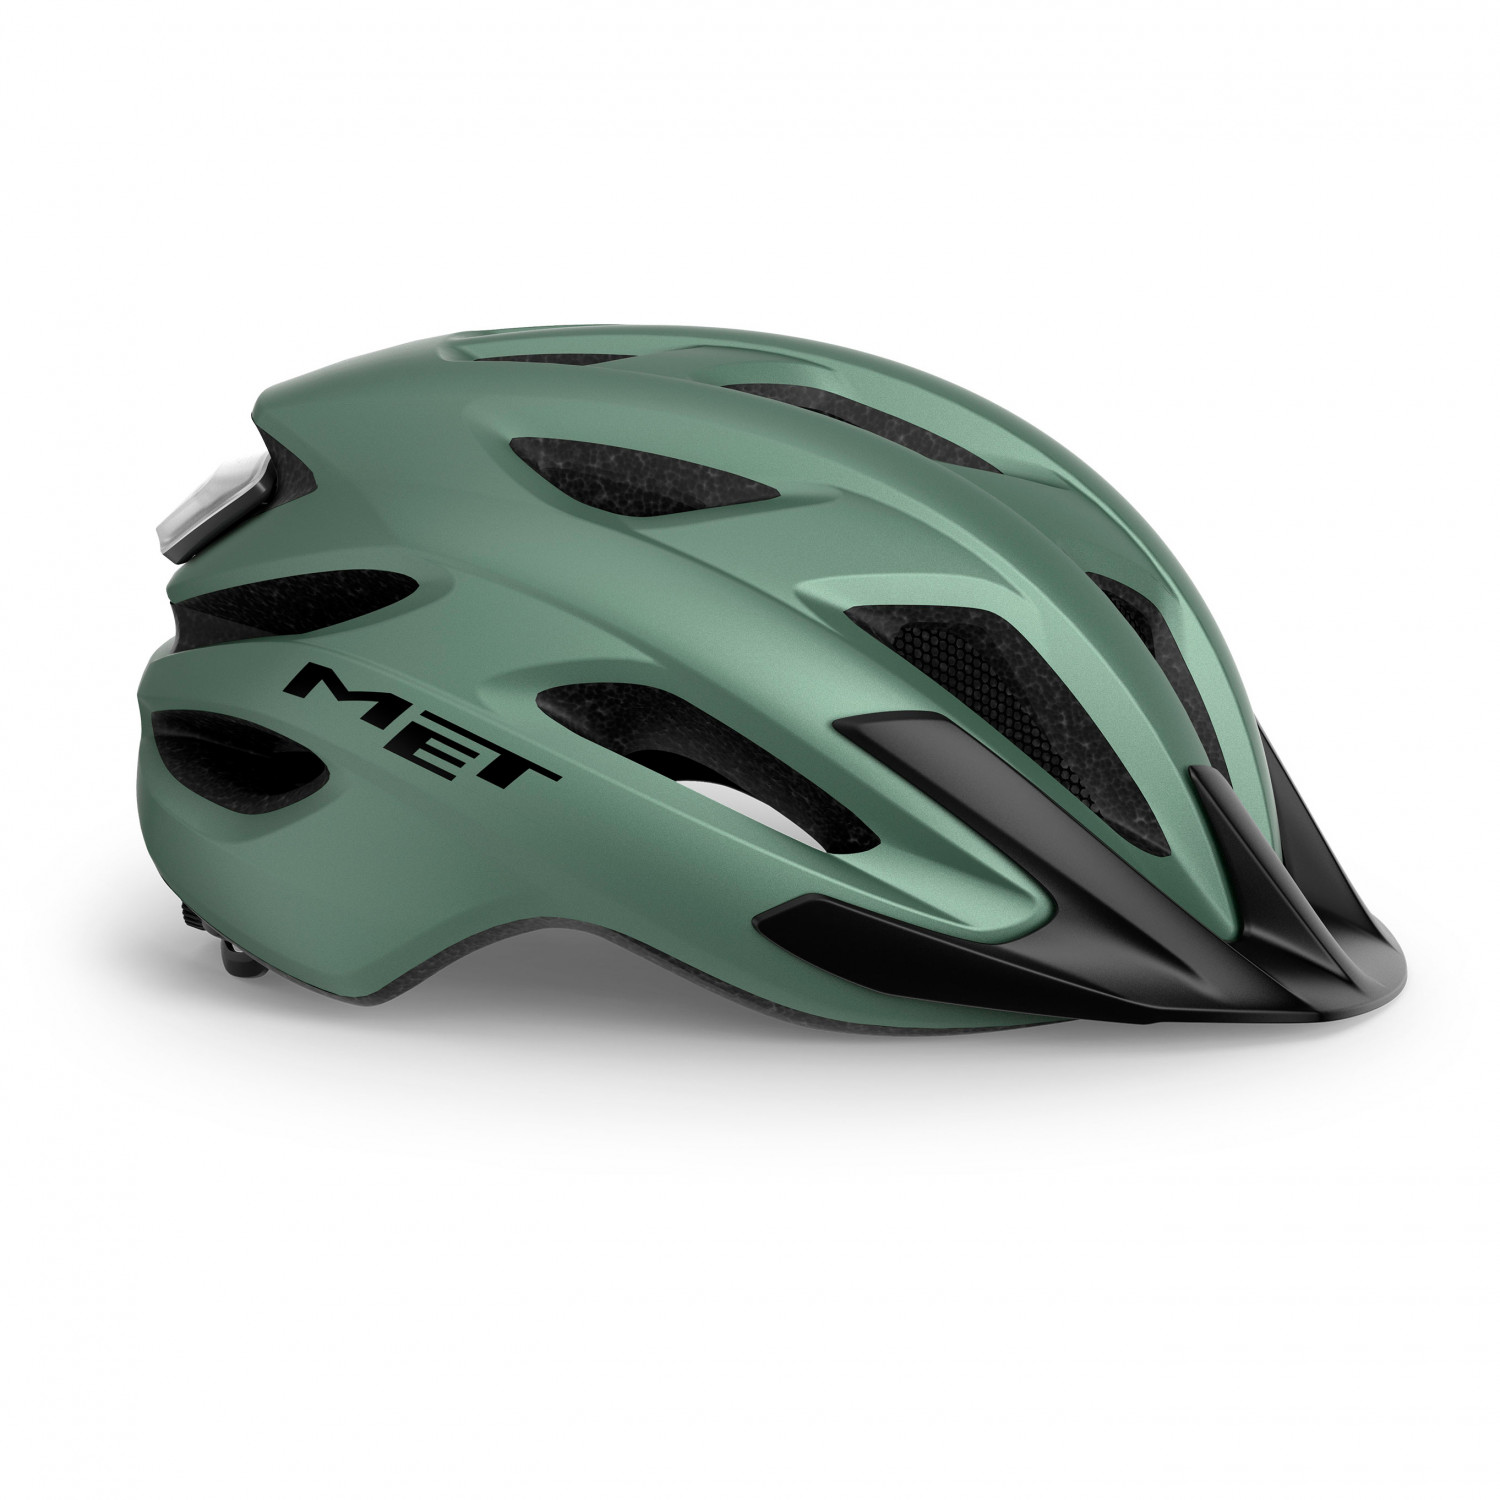 Велосипедный шлем Met Crossover, цвет Sage